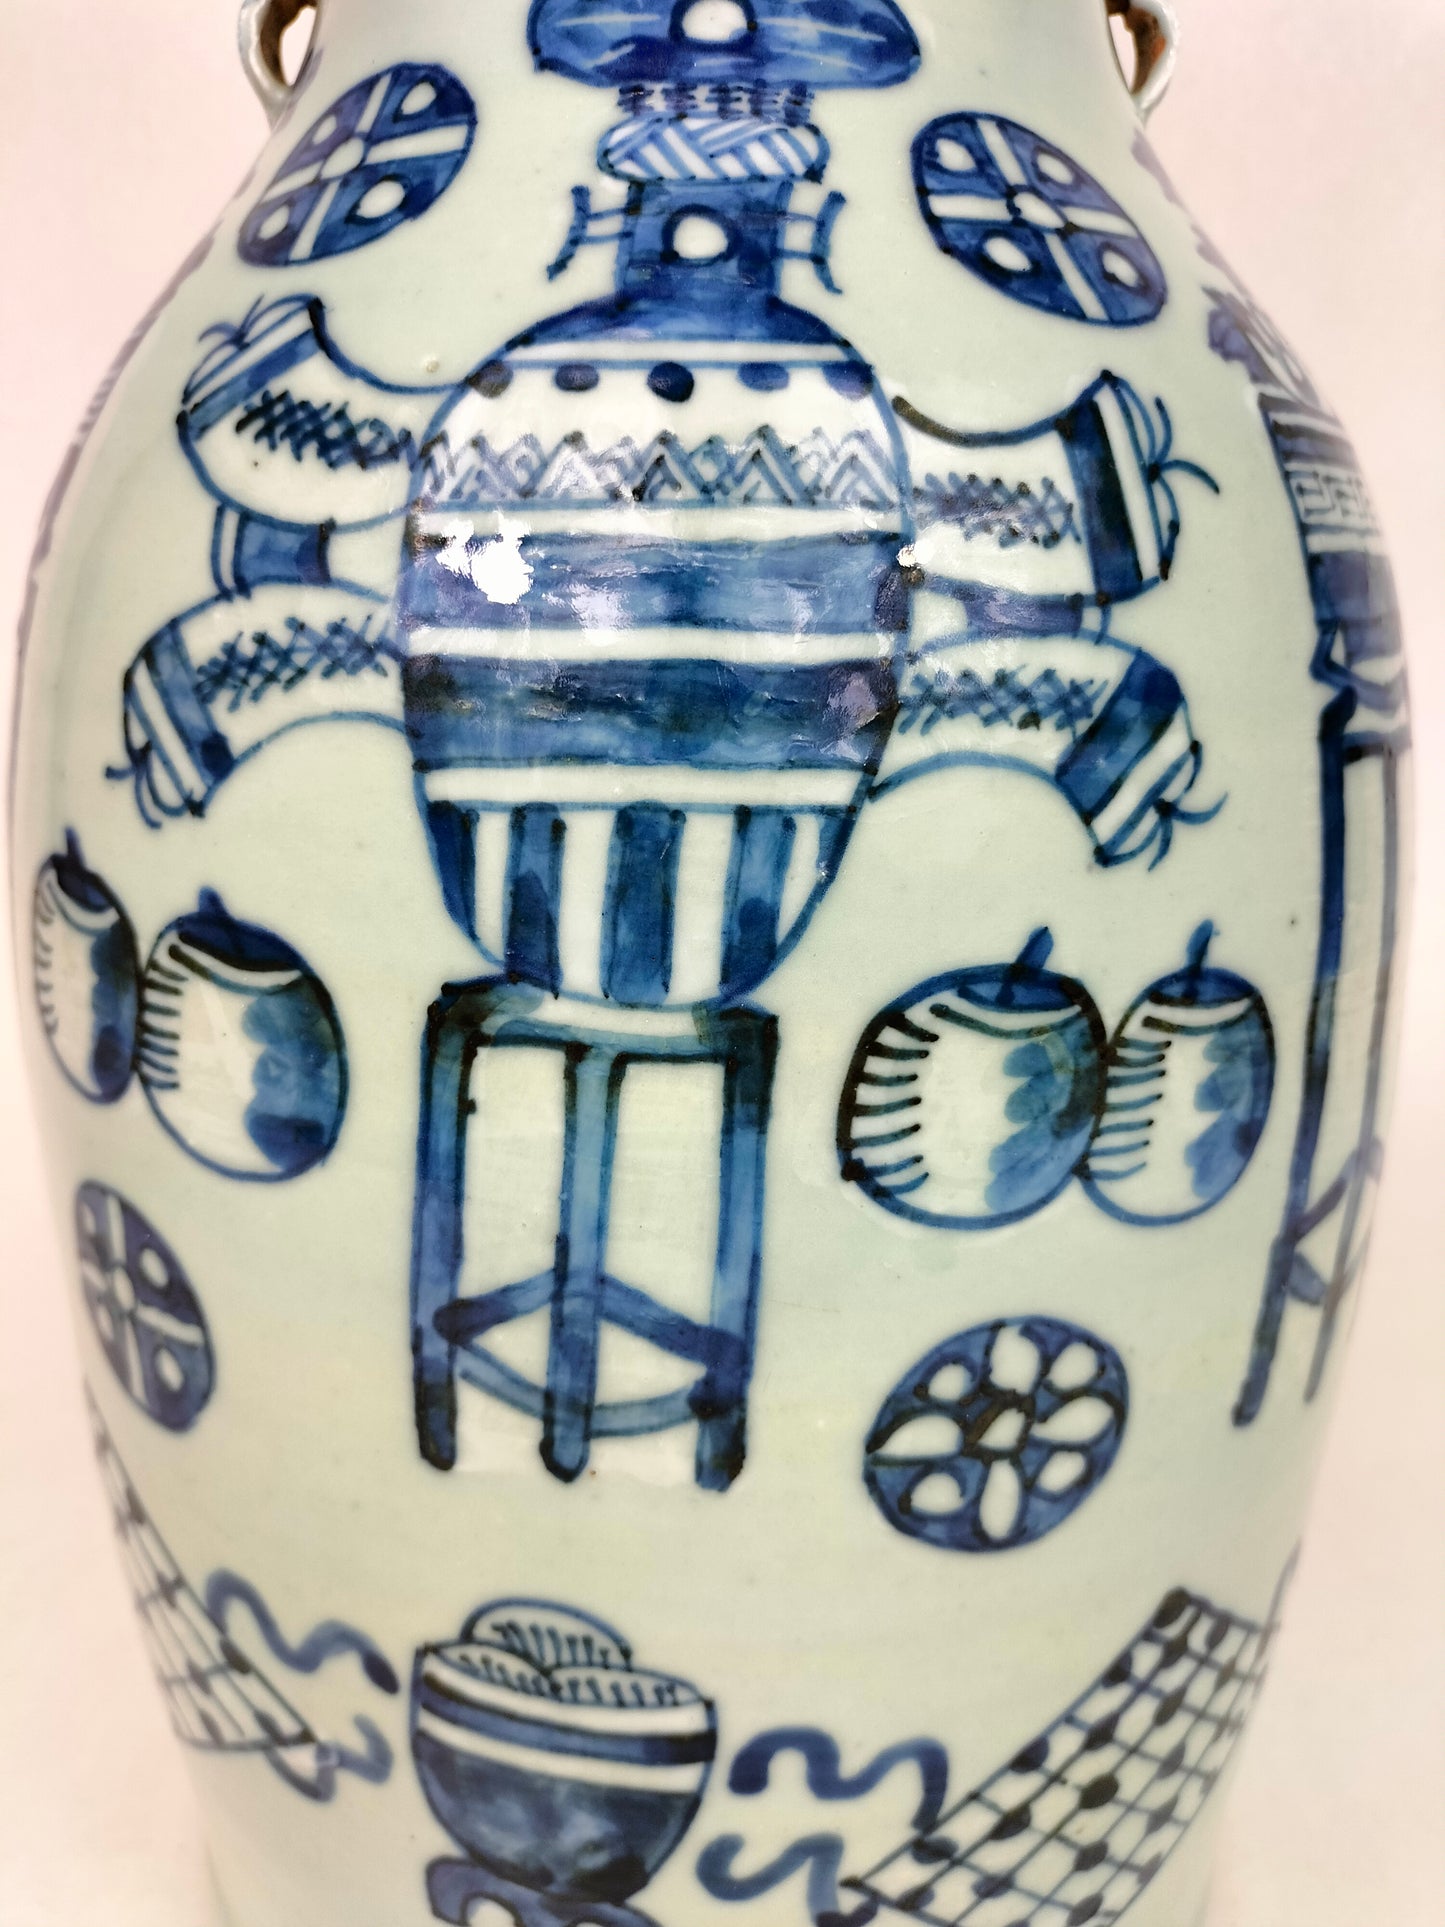 中国古董青瓷花瓶，饰有古物 // 清朝 - 19 世纪